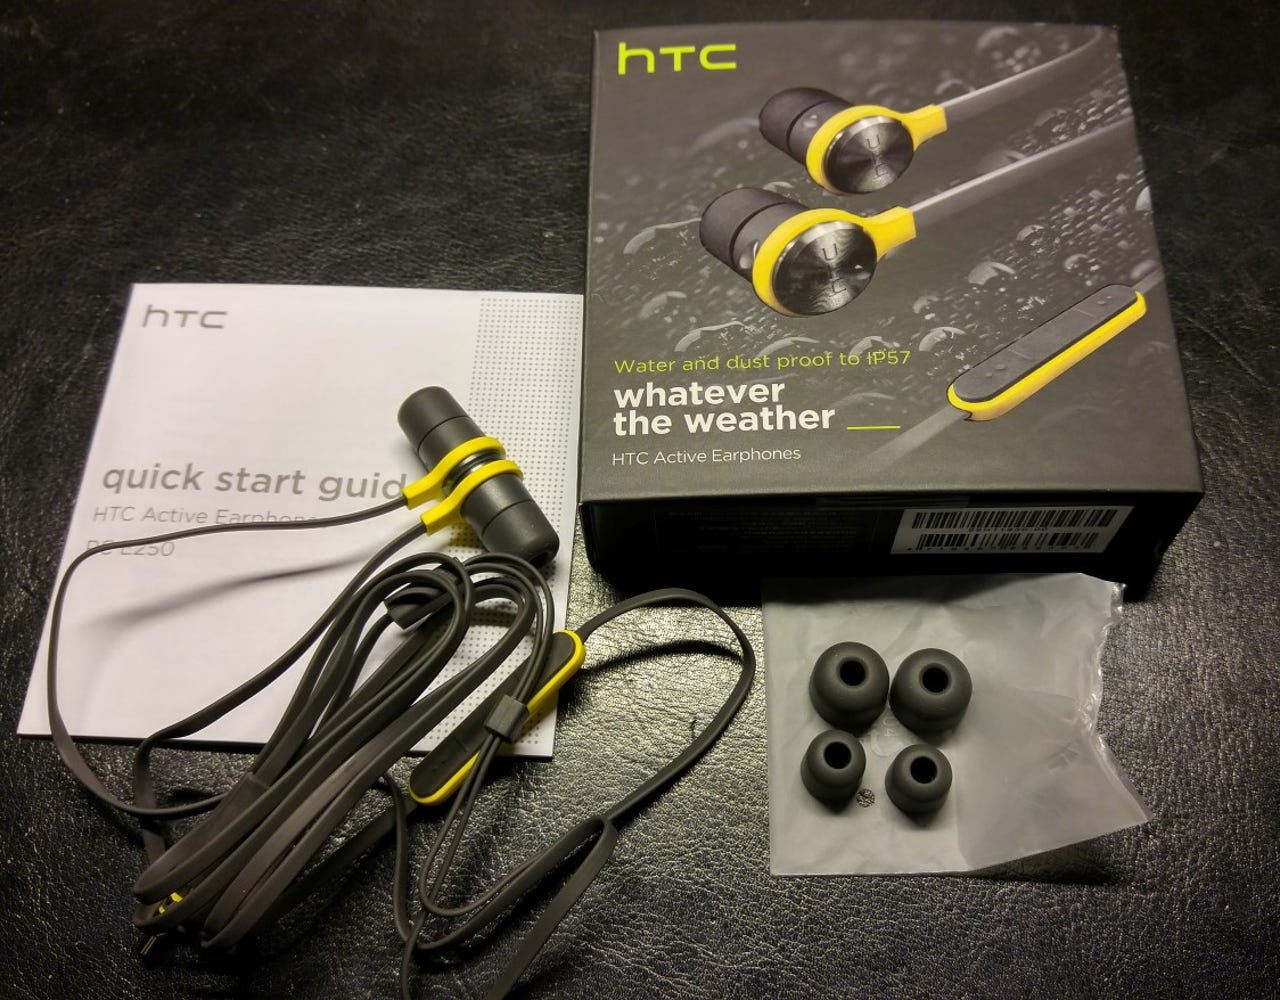 htc-active-earphones-1.jpg